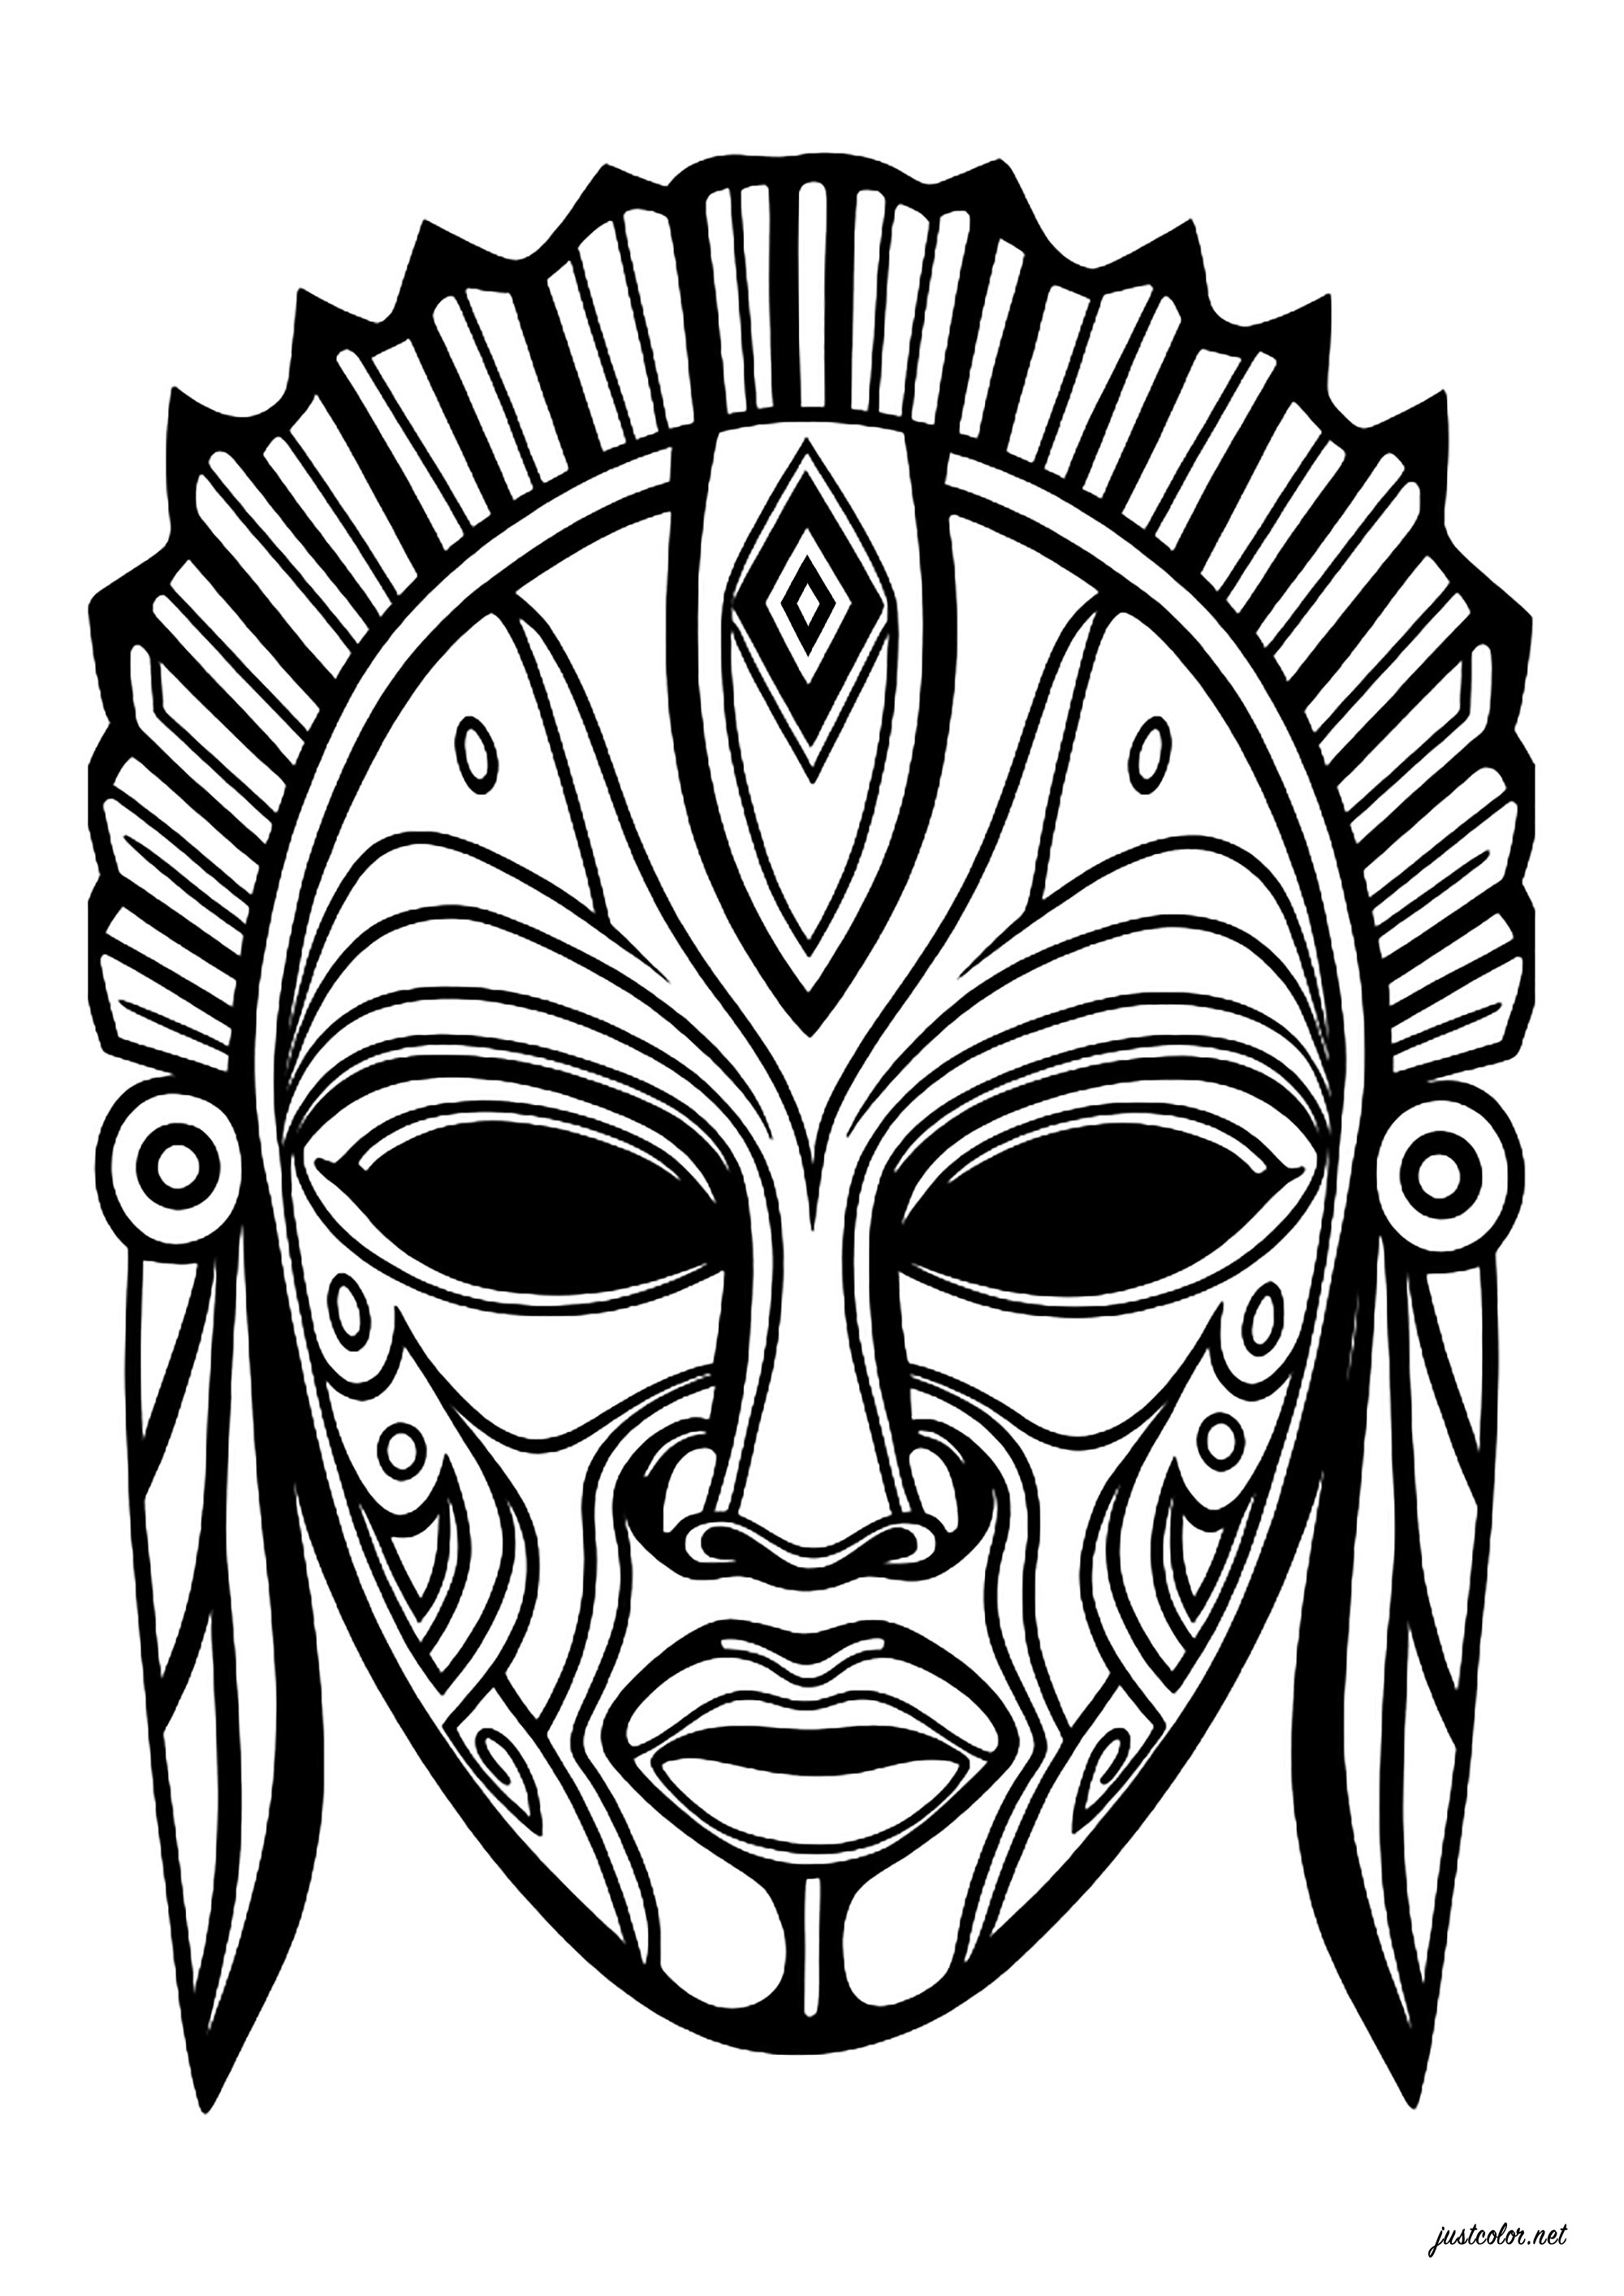 Máscara imaginária, inspirada nas máscaras africanas. Numerosos motivos interiores, que permitem colorir a máscara numa vasta gama de cores